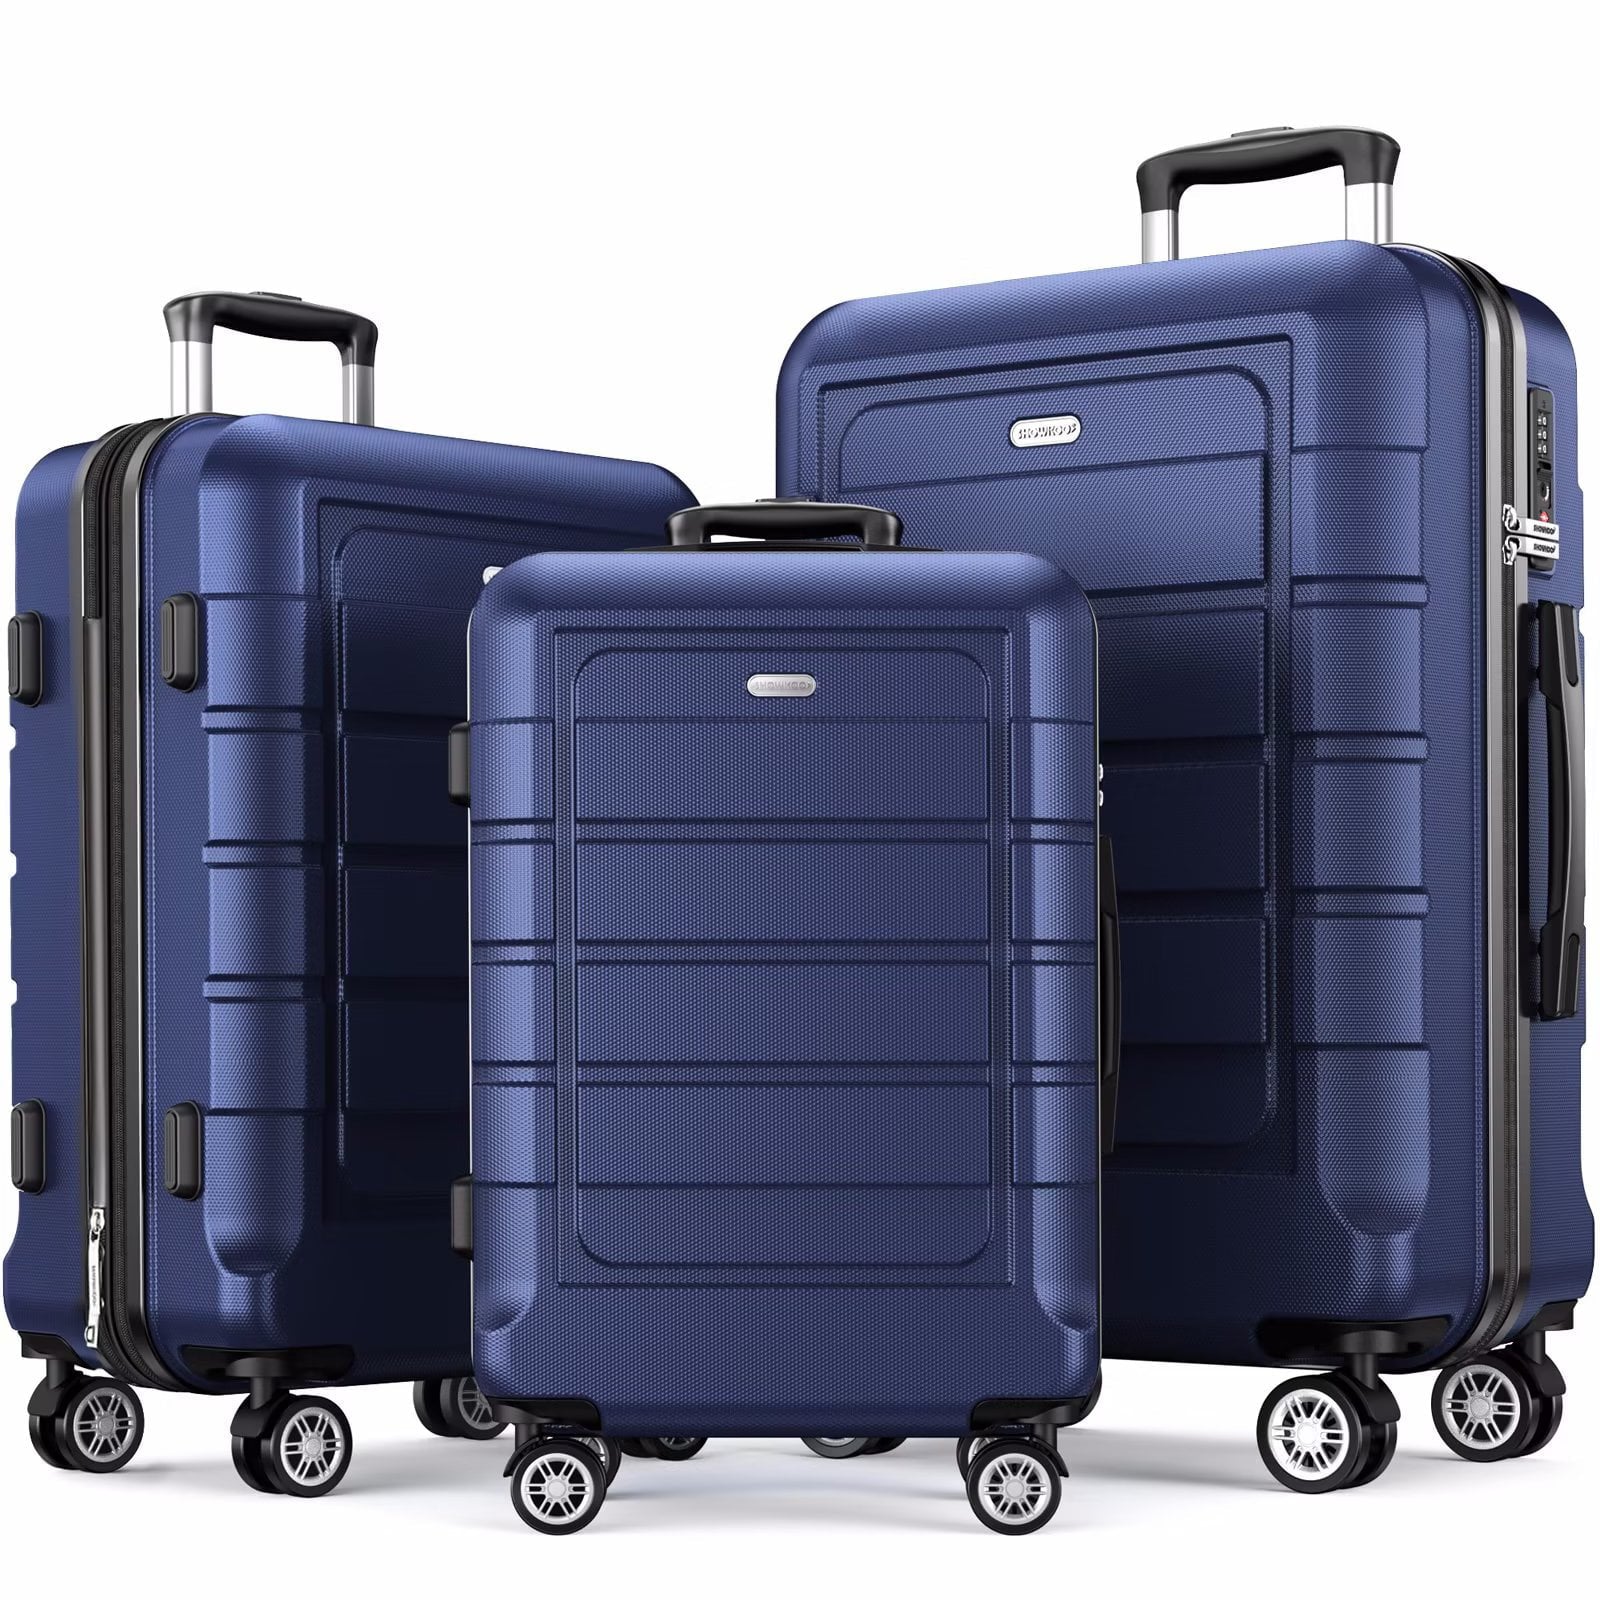 SUGIFT 3 Piece Luggage Set Expandable ABS Hard Shell luggage TSA Lock Hardside Double Spinner Wheels Suitcase BLACK